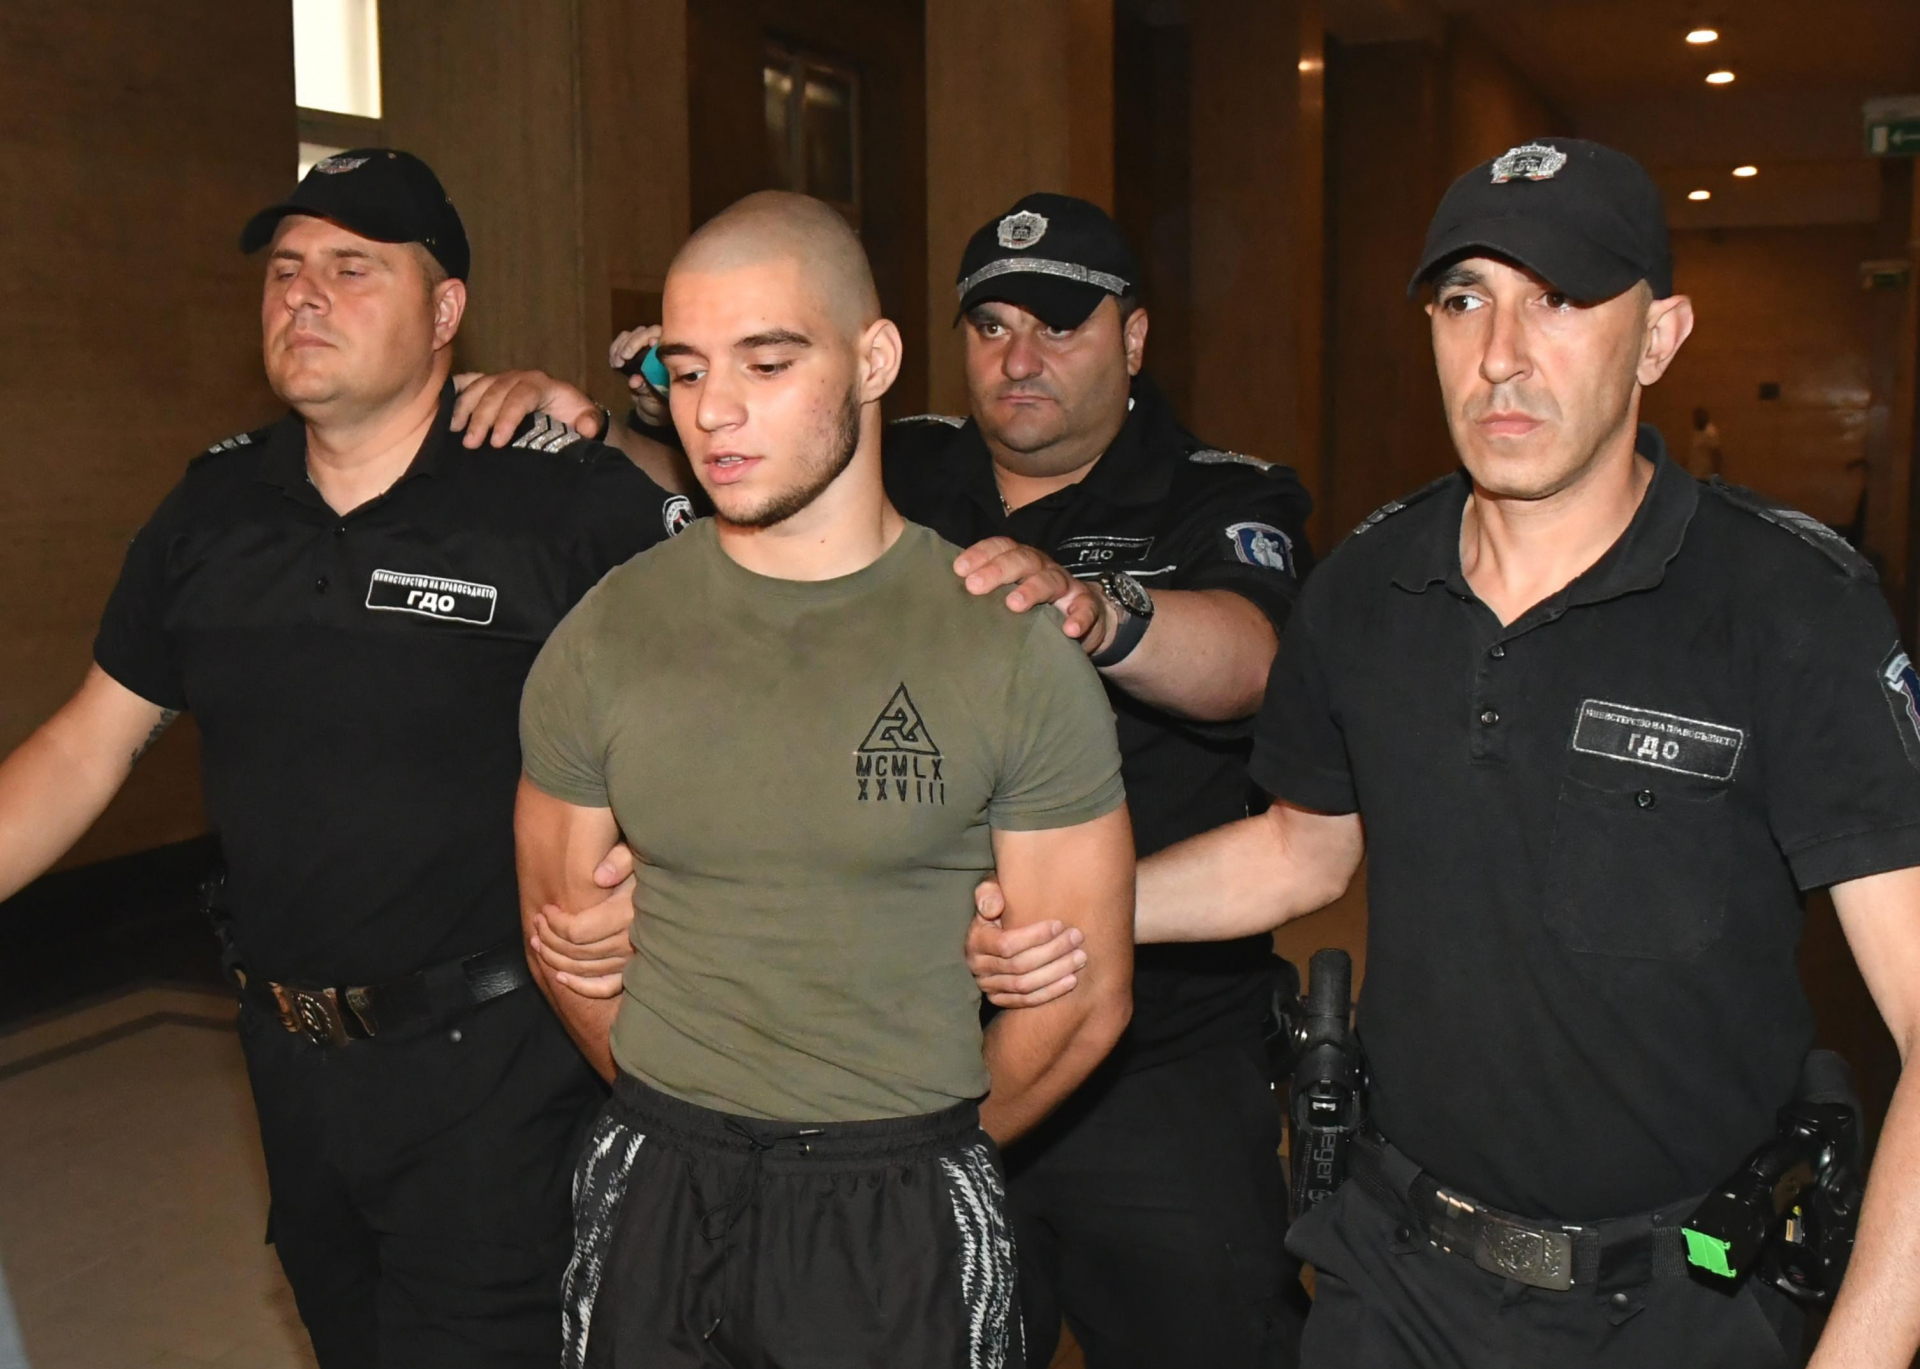 Прокурорското синче от Перник изнагля брутално в съда ВИДЕО